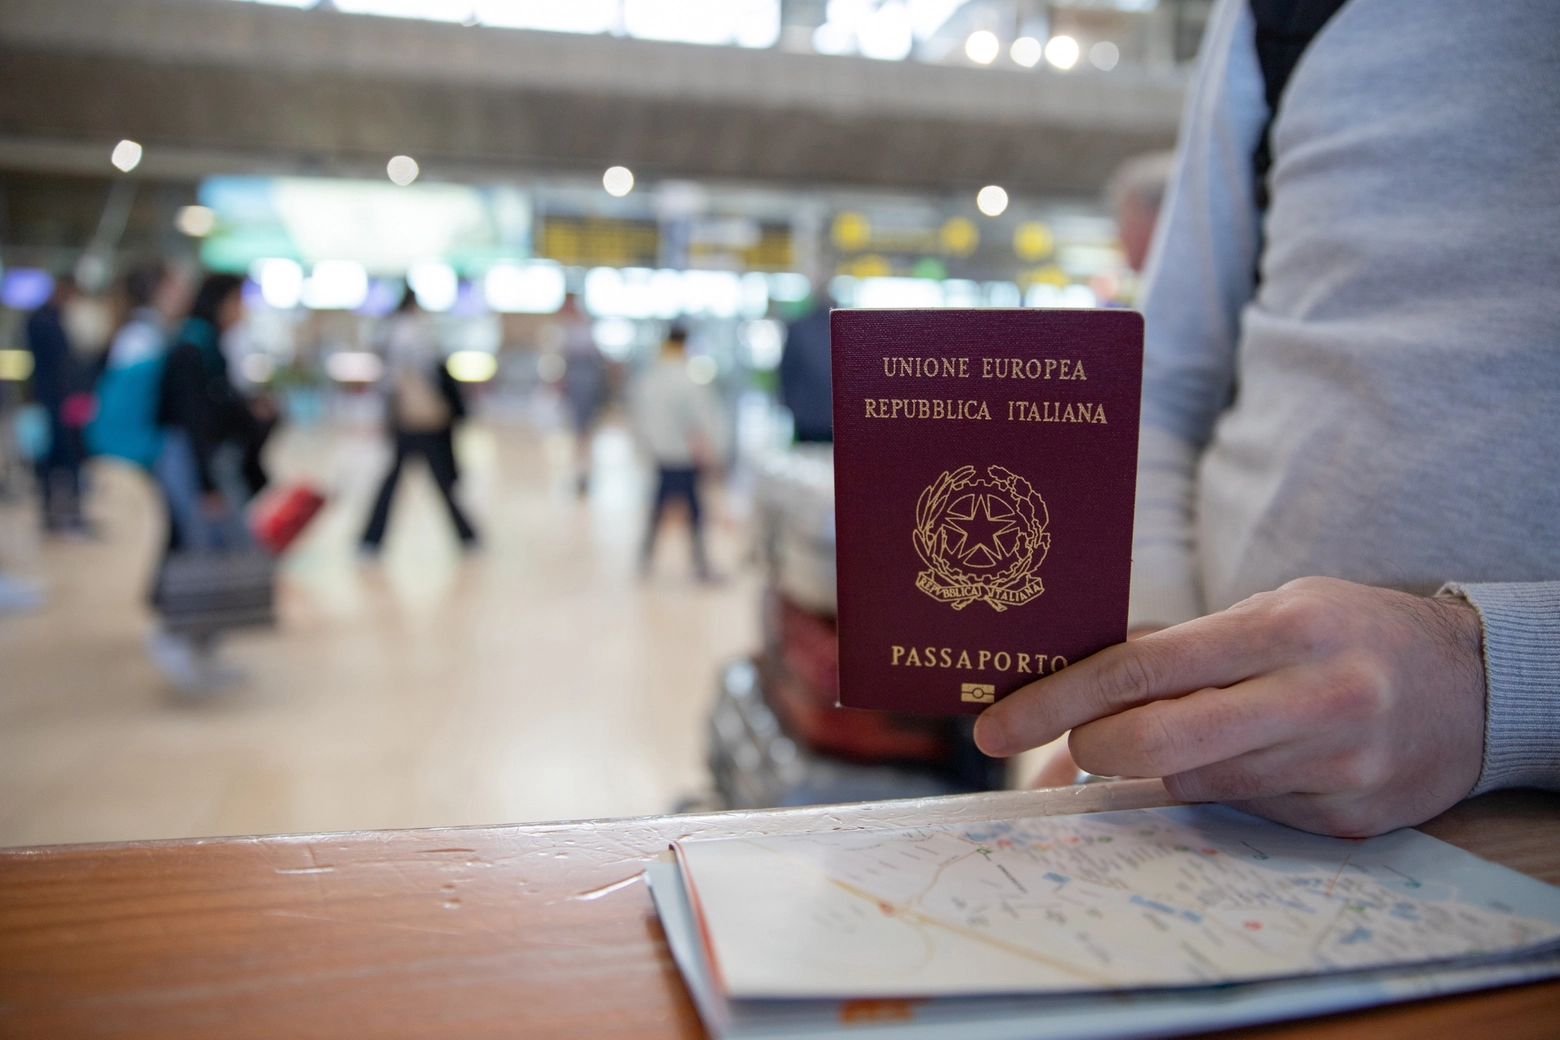 Passaporto urgente Italia - Crediti iStock Photo